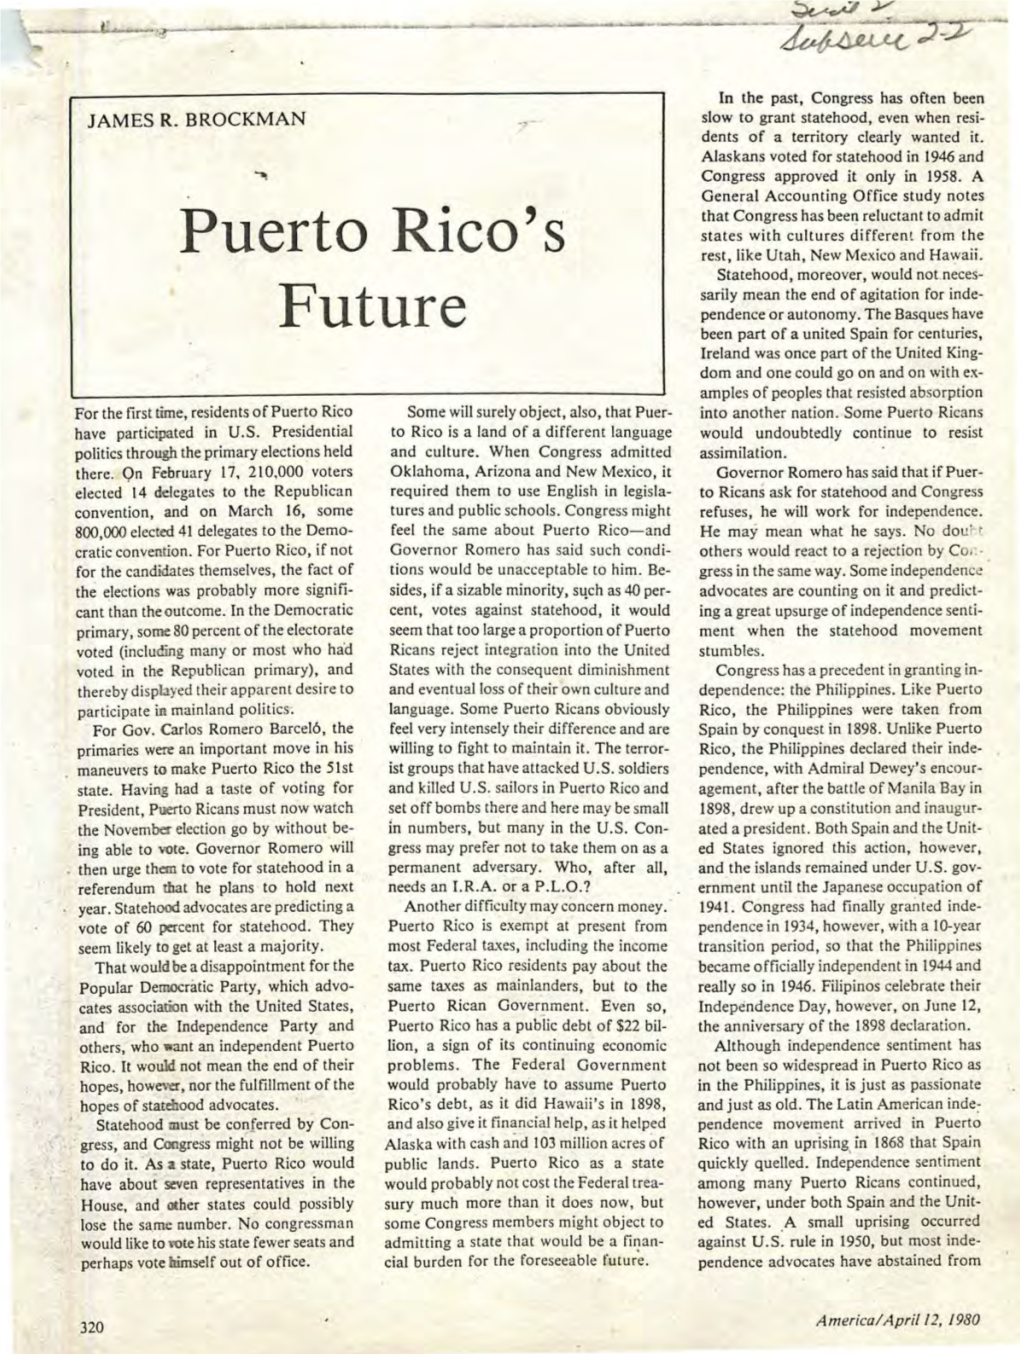 America, April 12 1959, Puerto Rico's Future